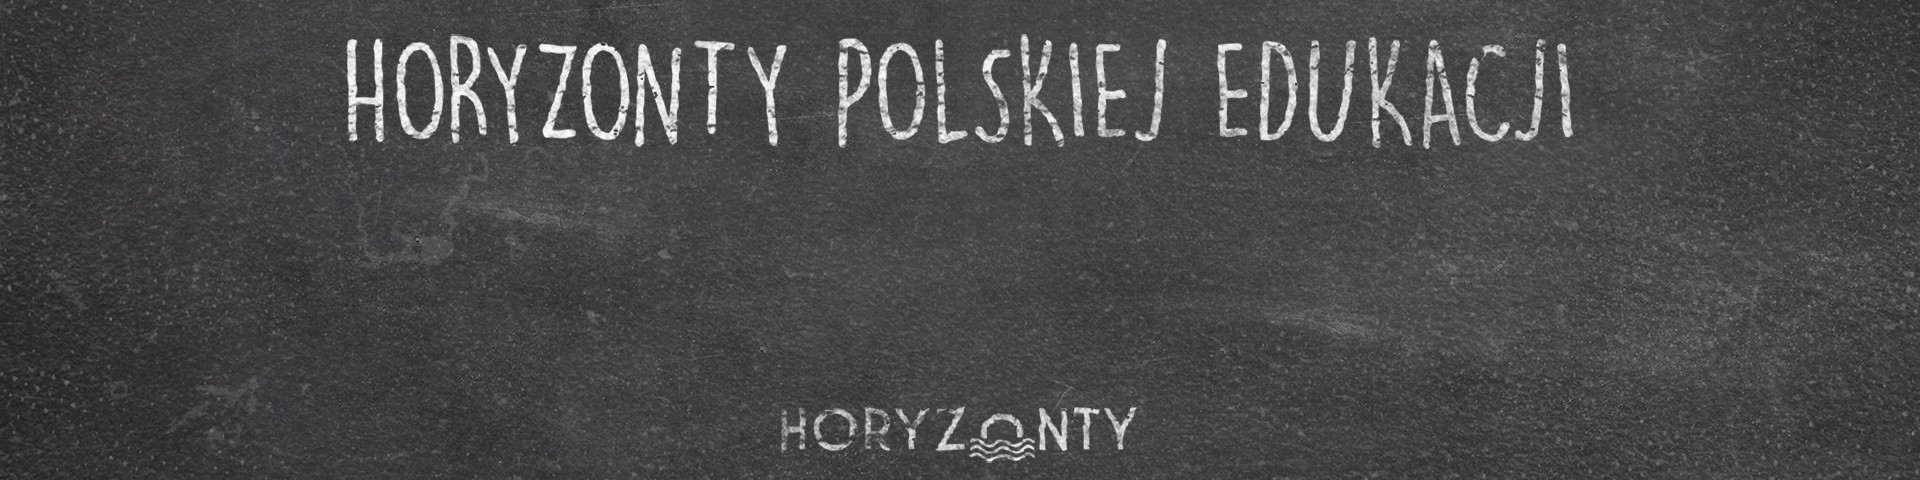 Horyzonty polskiej edukacji – problem dostępności